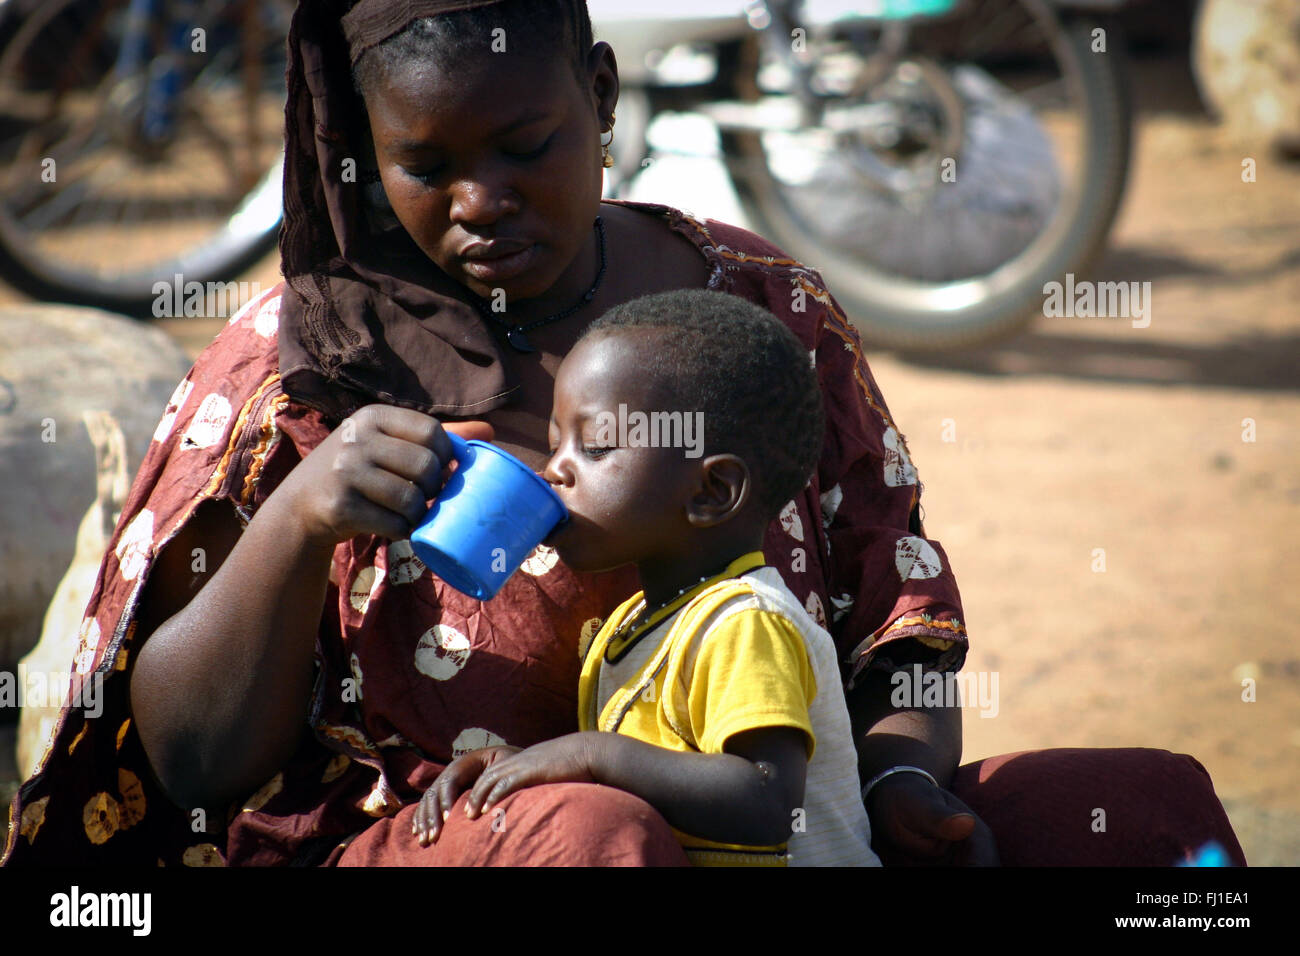 Donner de l'eau mère malienne / nourrir son enfant dans le marché de Ségou au Mali Banque D'Images